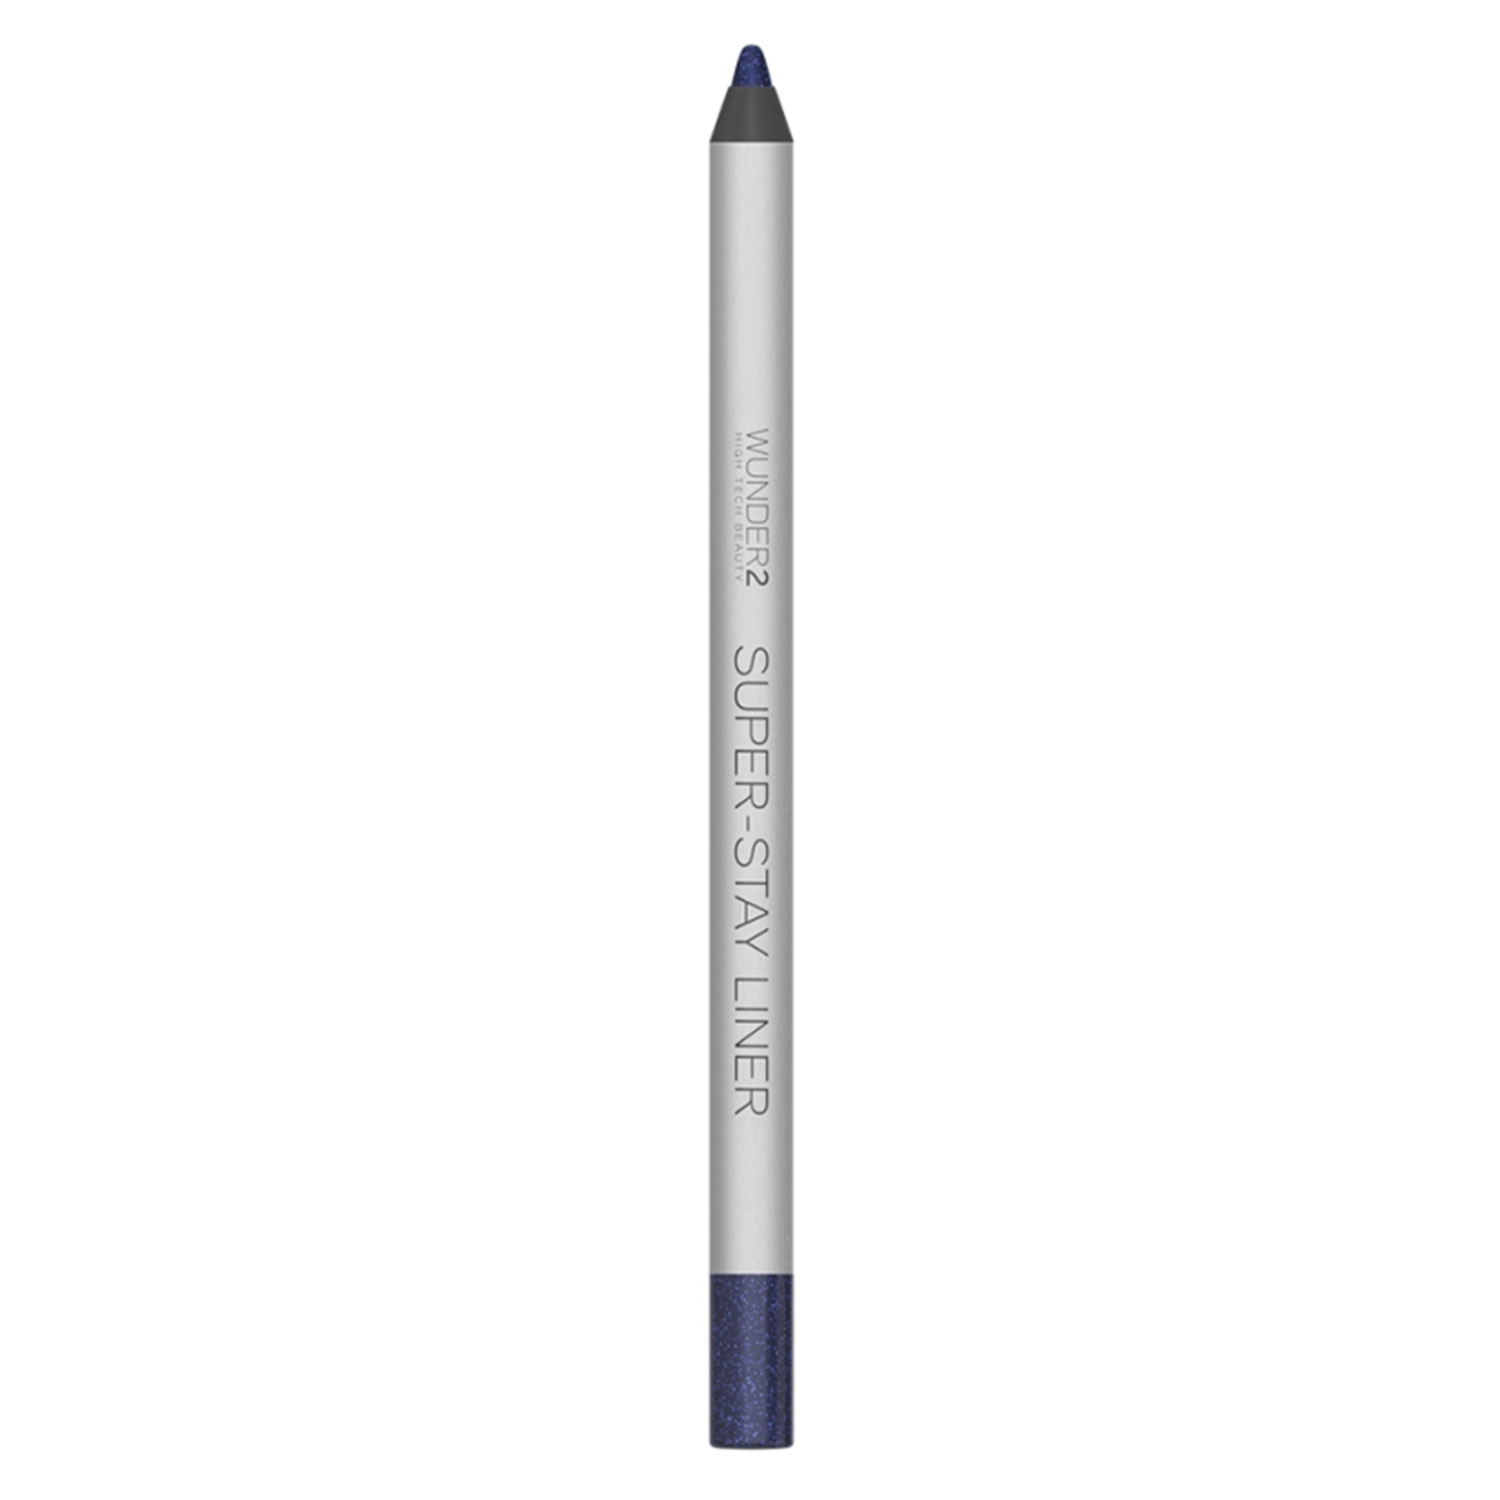 Produktbild von SUPER-STAY - Eye Pencil Glitter Navy